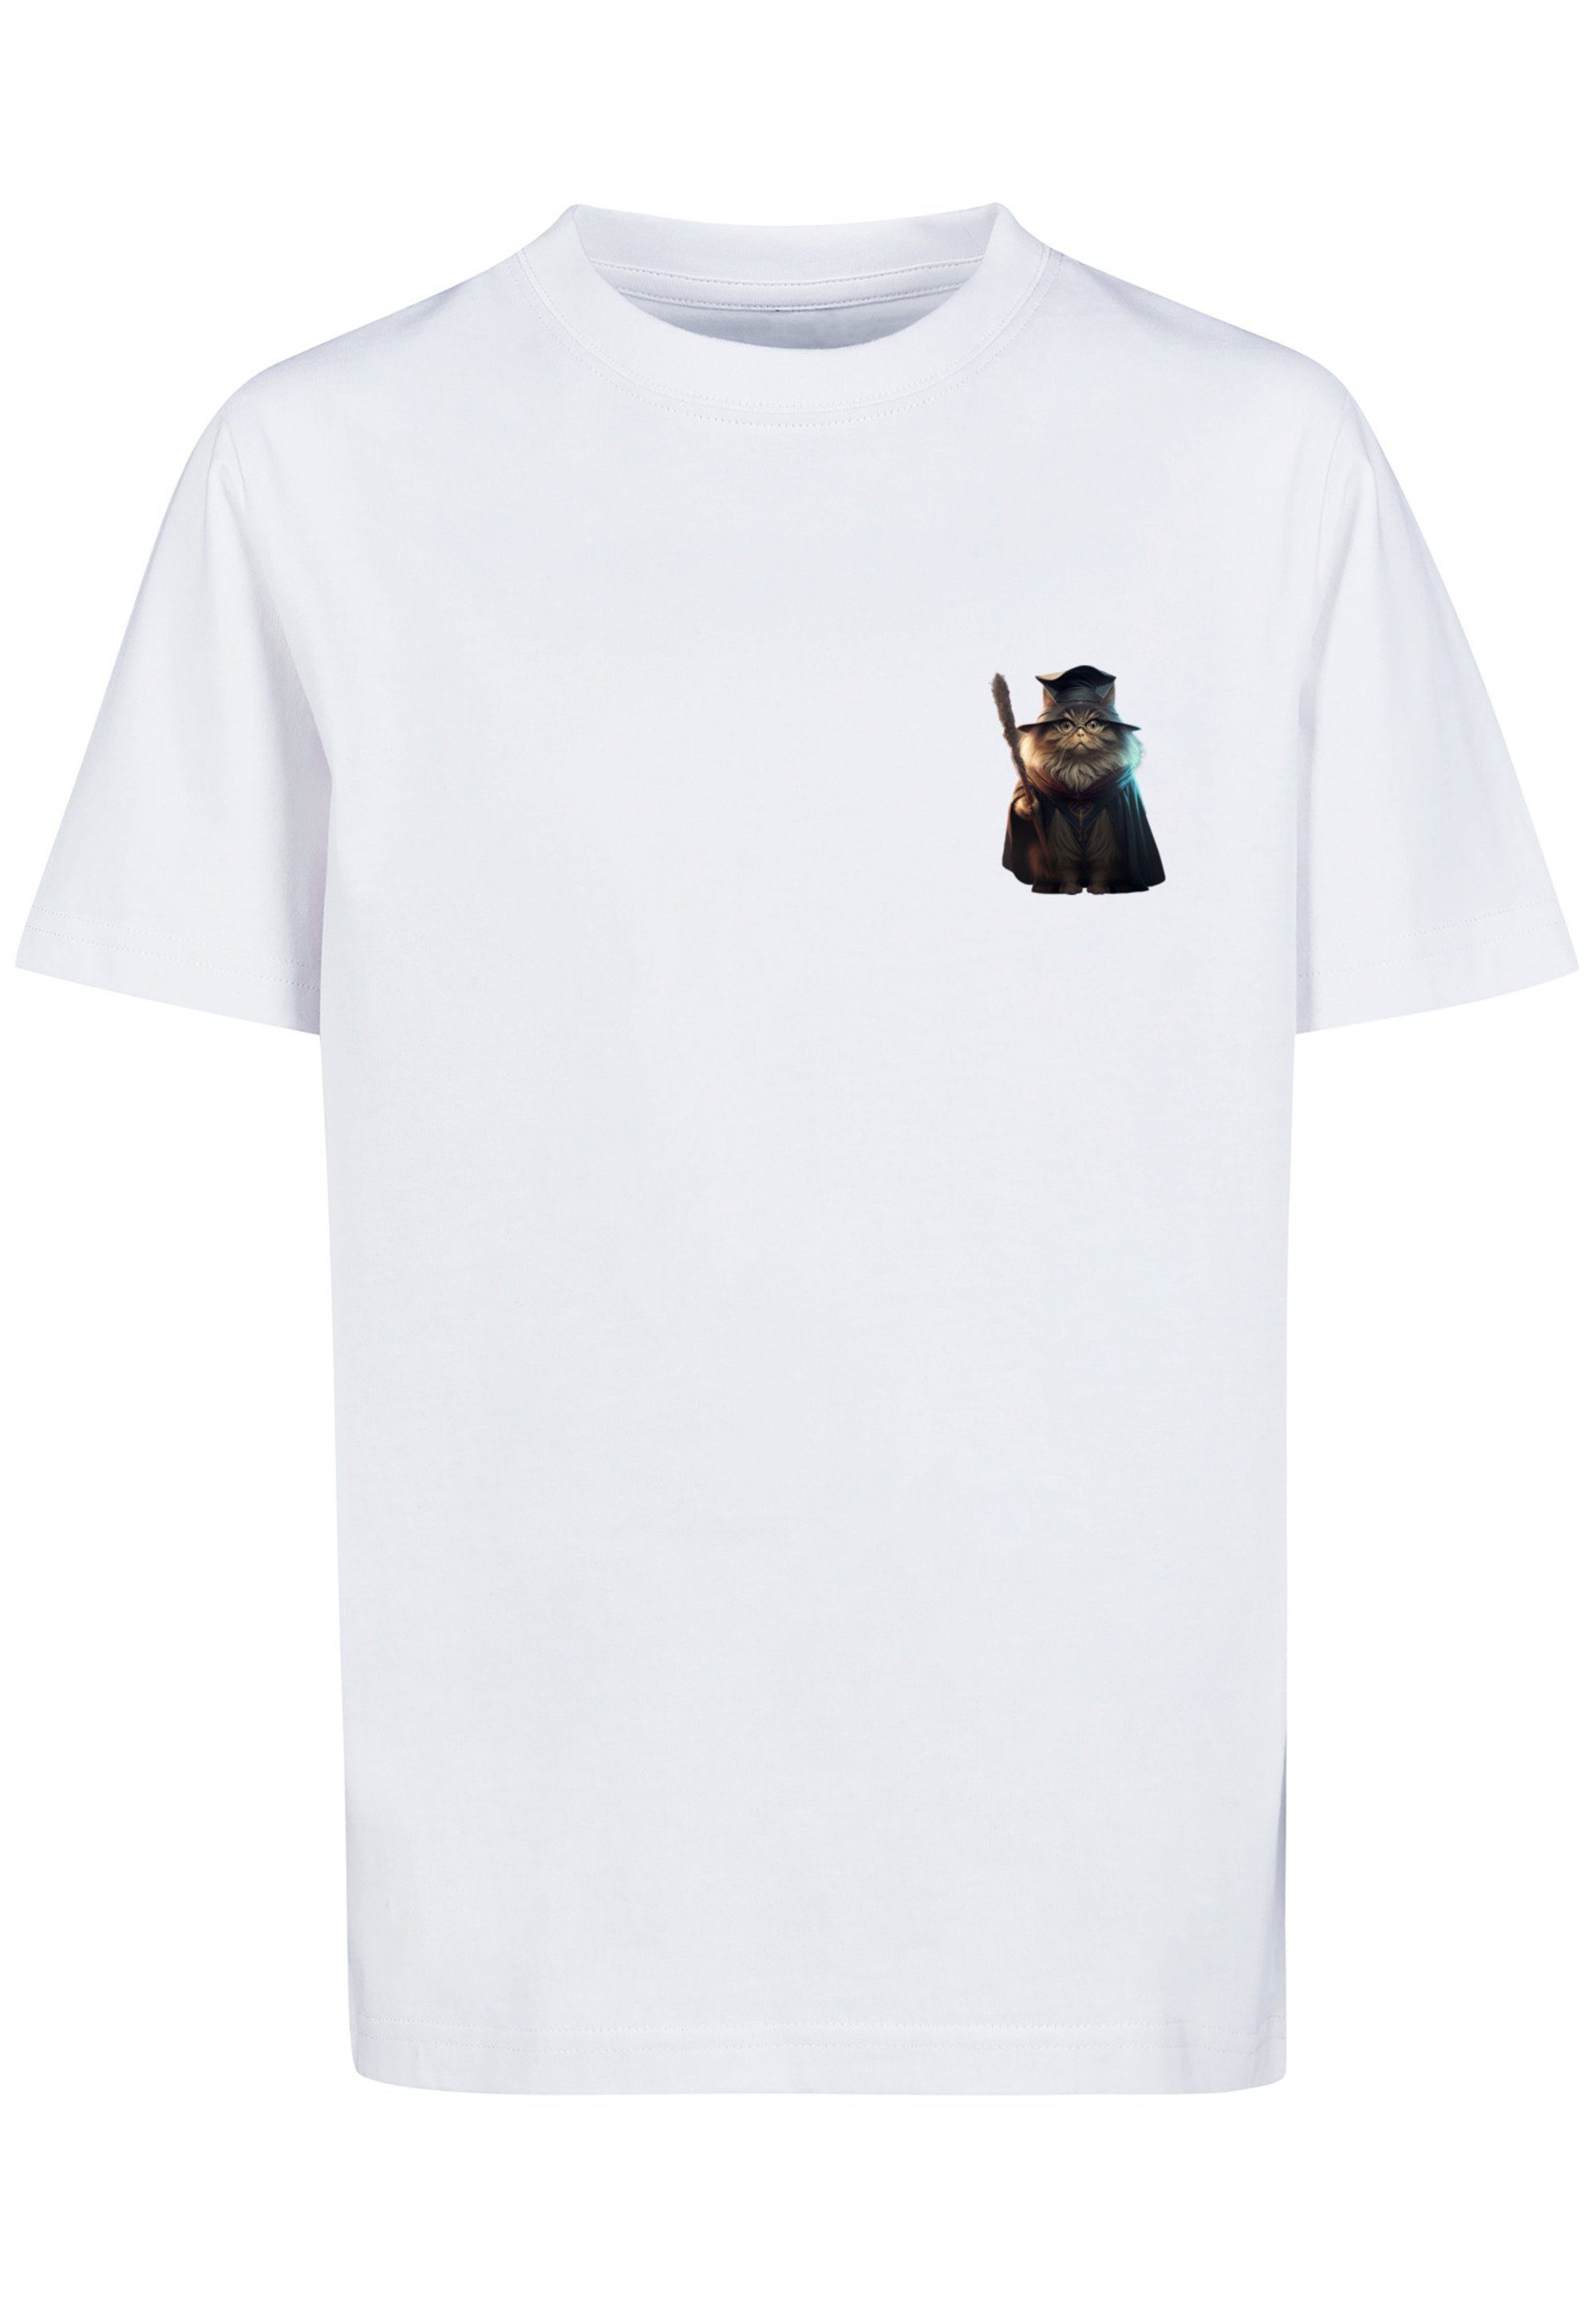 F4NT4STIC T-Shirt Cat Print weiß TEE Wizard UNISEX